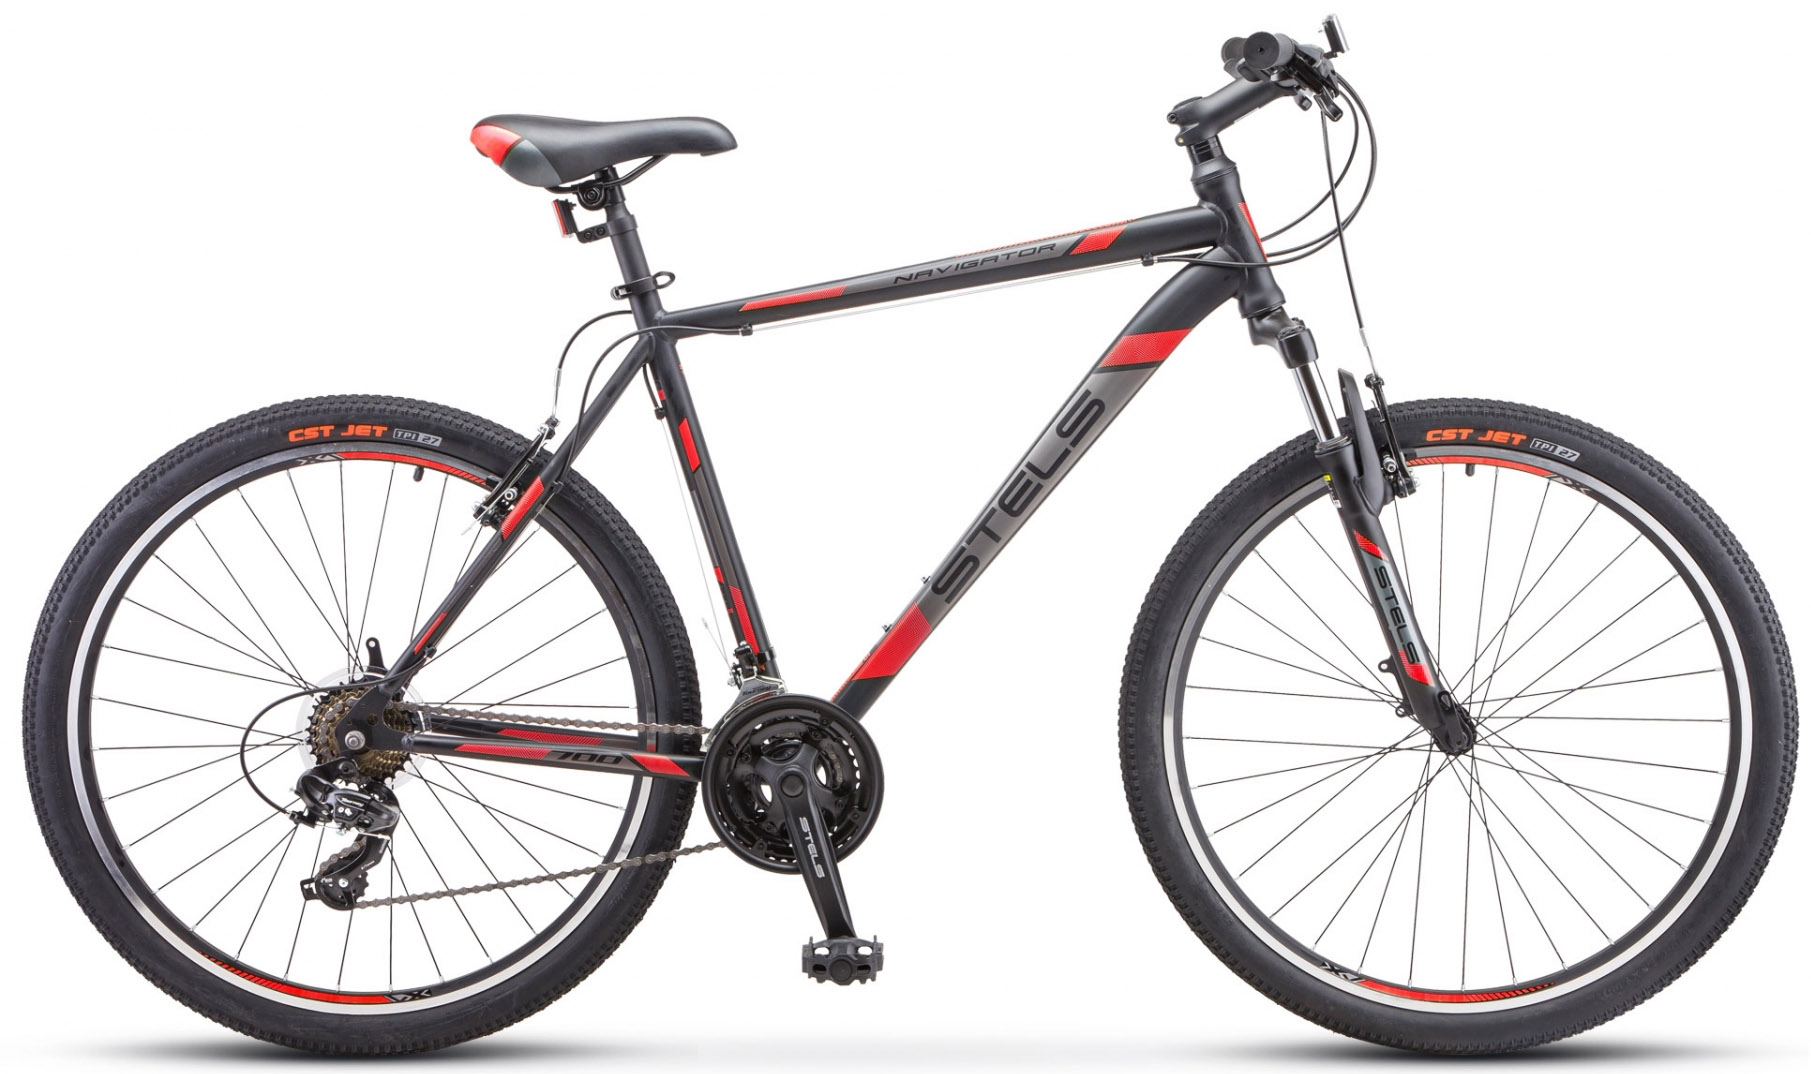  Отзывы о Горном велосипеде Stels Navigator 700 V 27.5" V020 2019